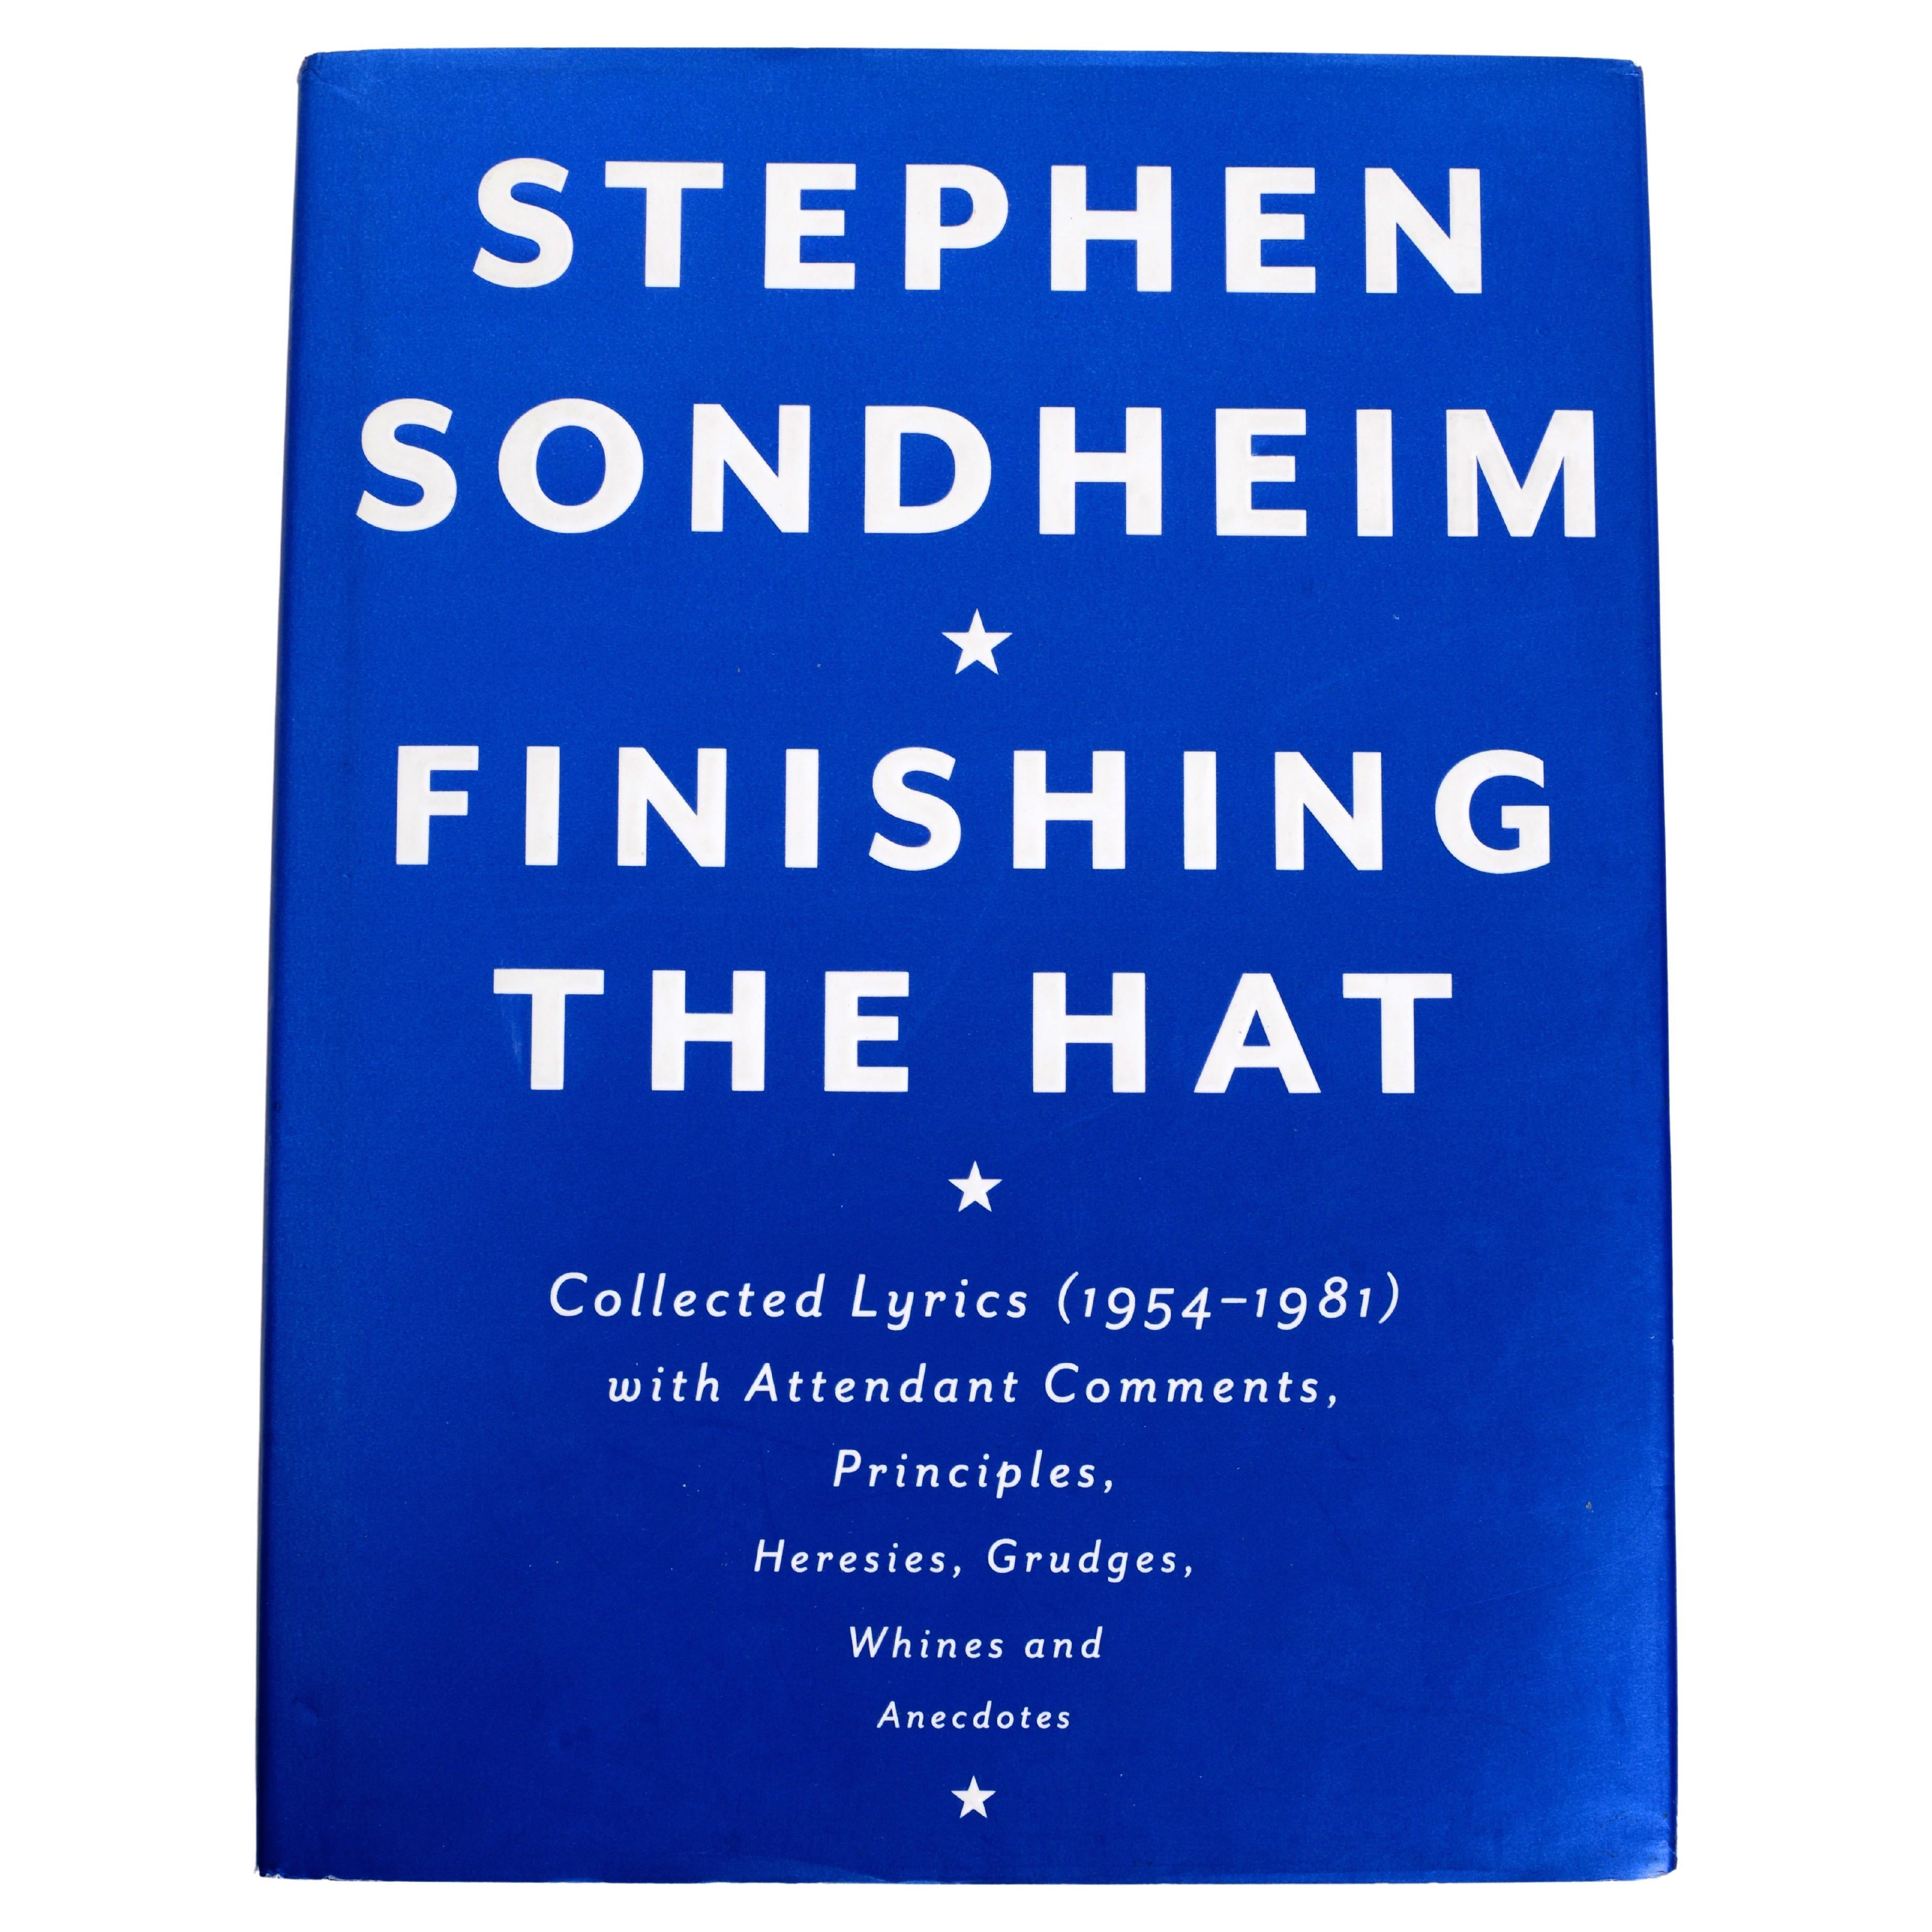 Finishing the Hat (finir le chapeau) Lyrics collected 1954-1981, commentaires de Stephen Sondheim